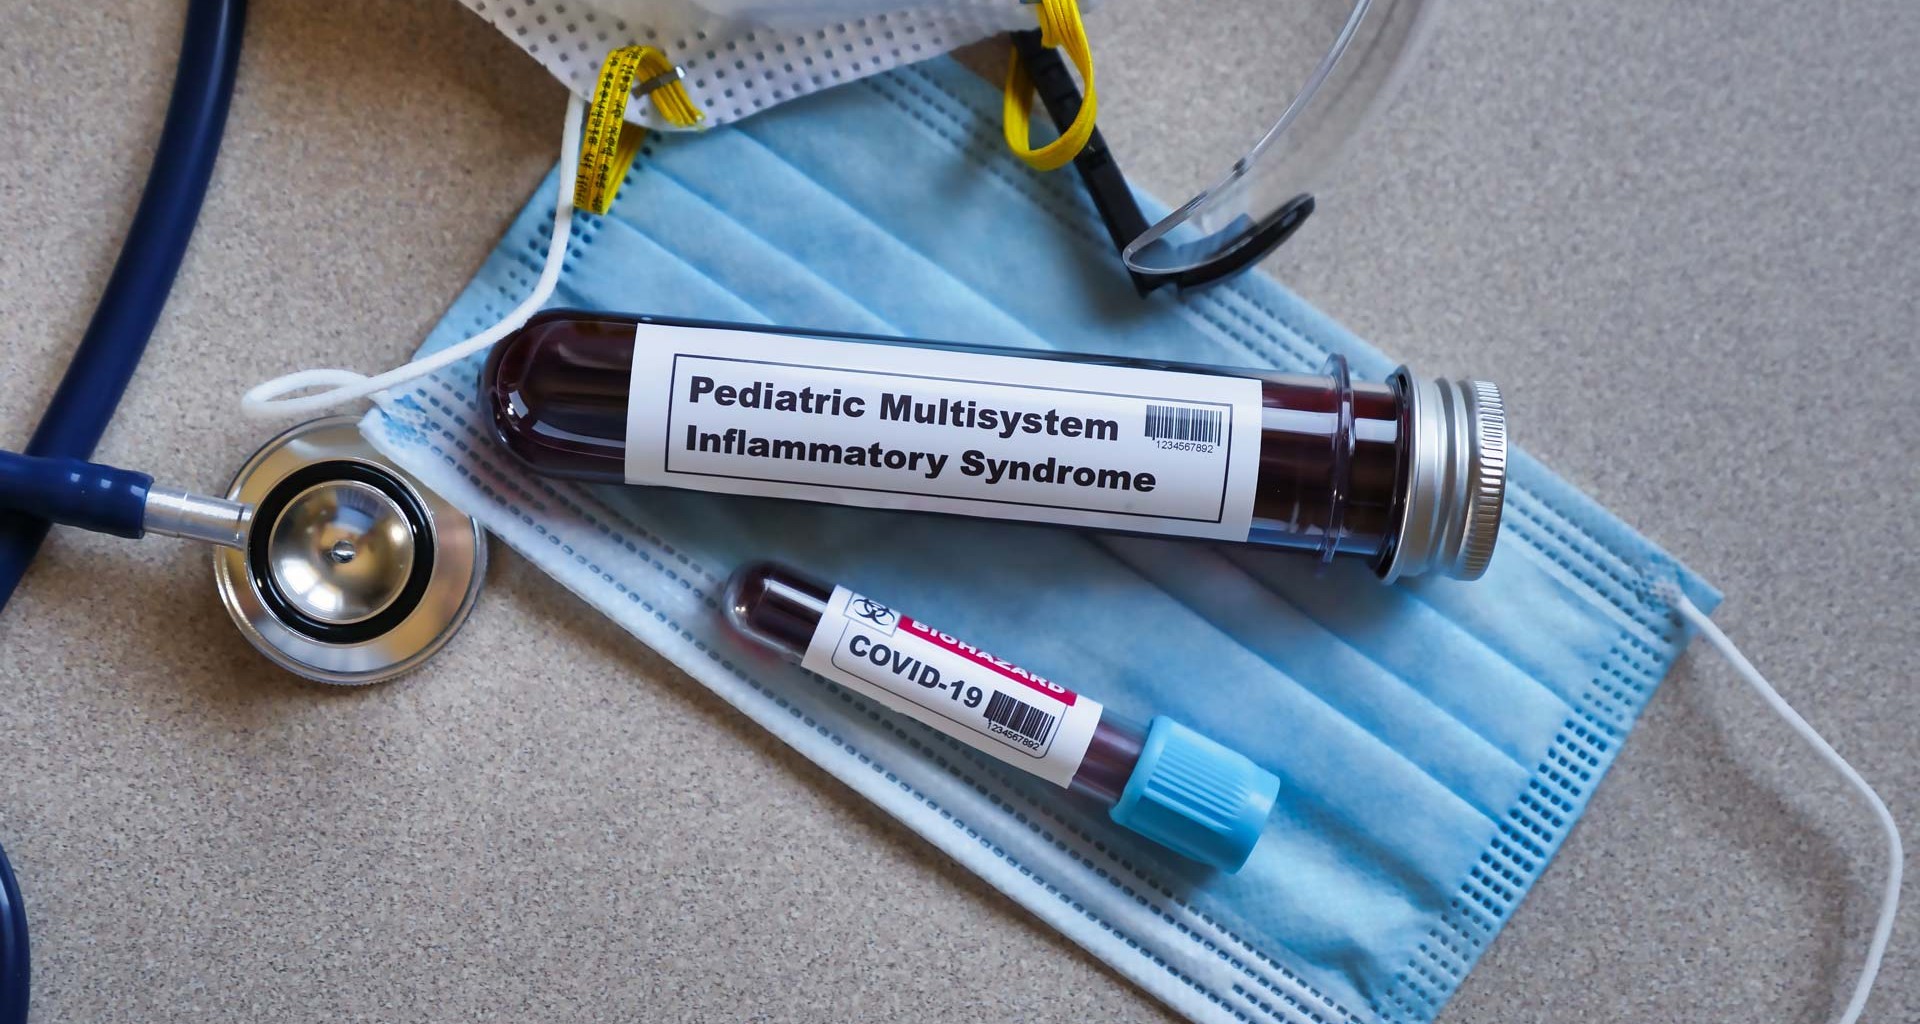 Síndrome inflamatorio multisistémico pediátrico, sus síntomas, lo que hay que decirle al médico. Señales de alerta